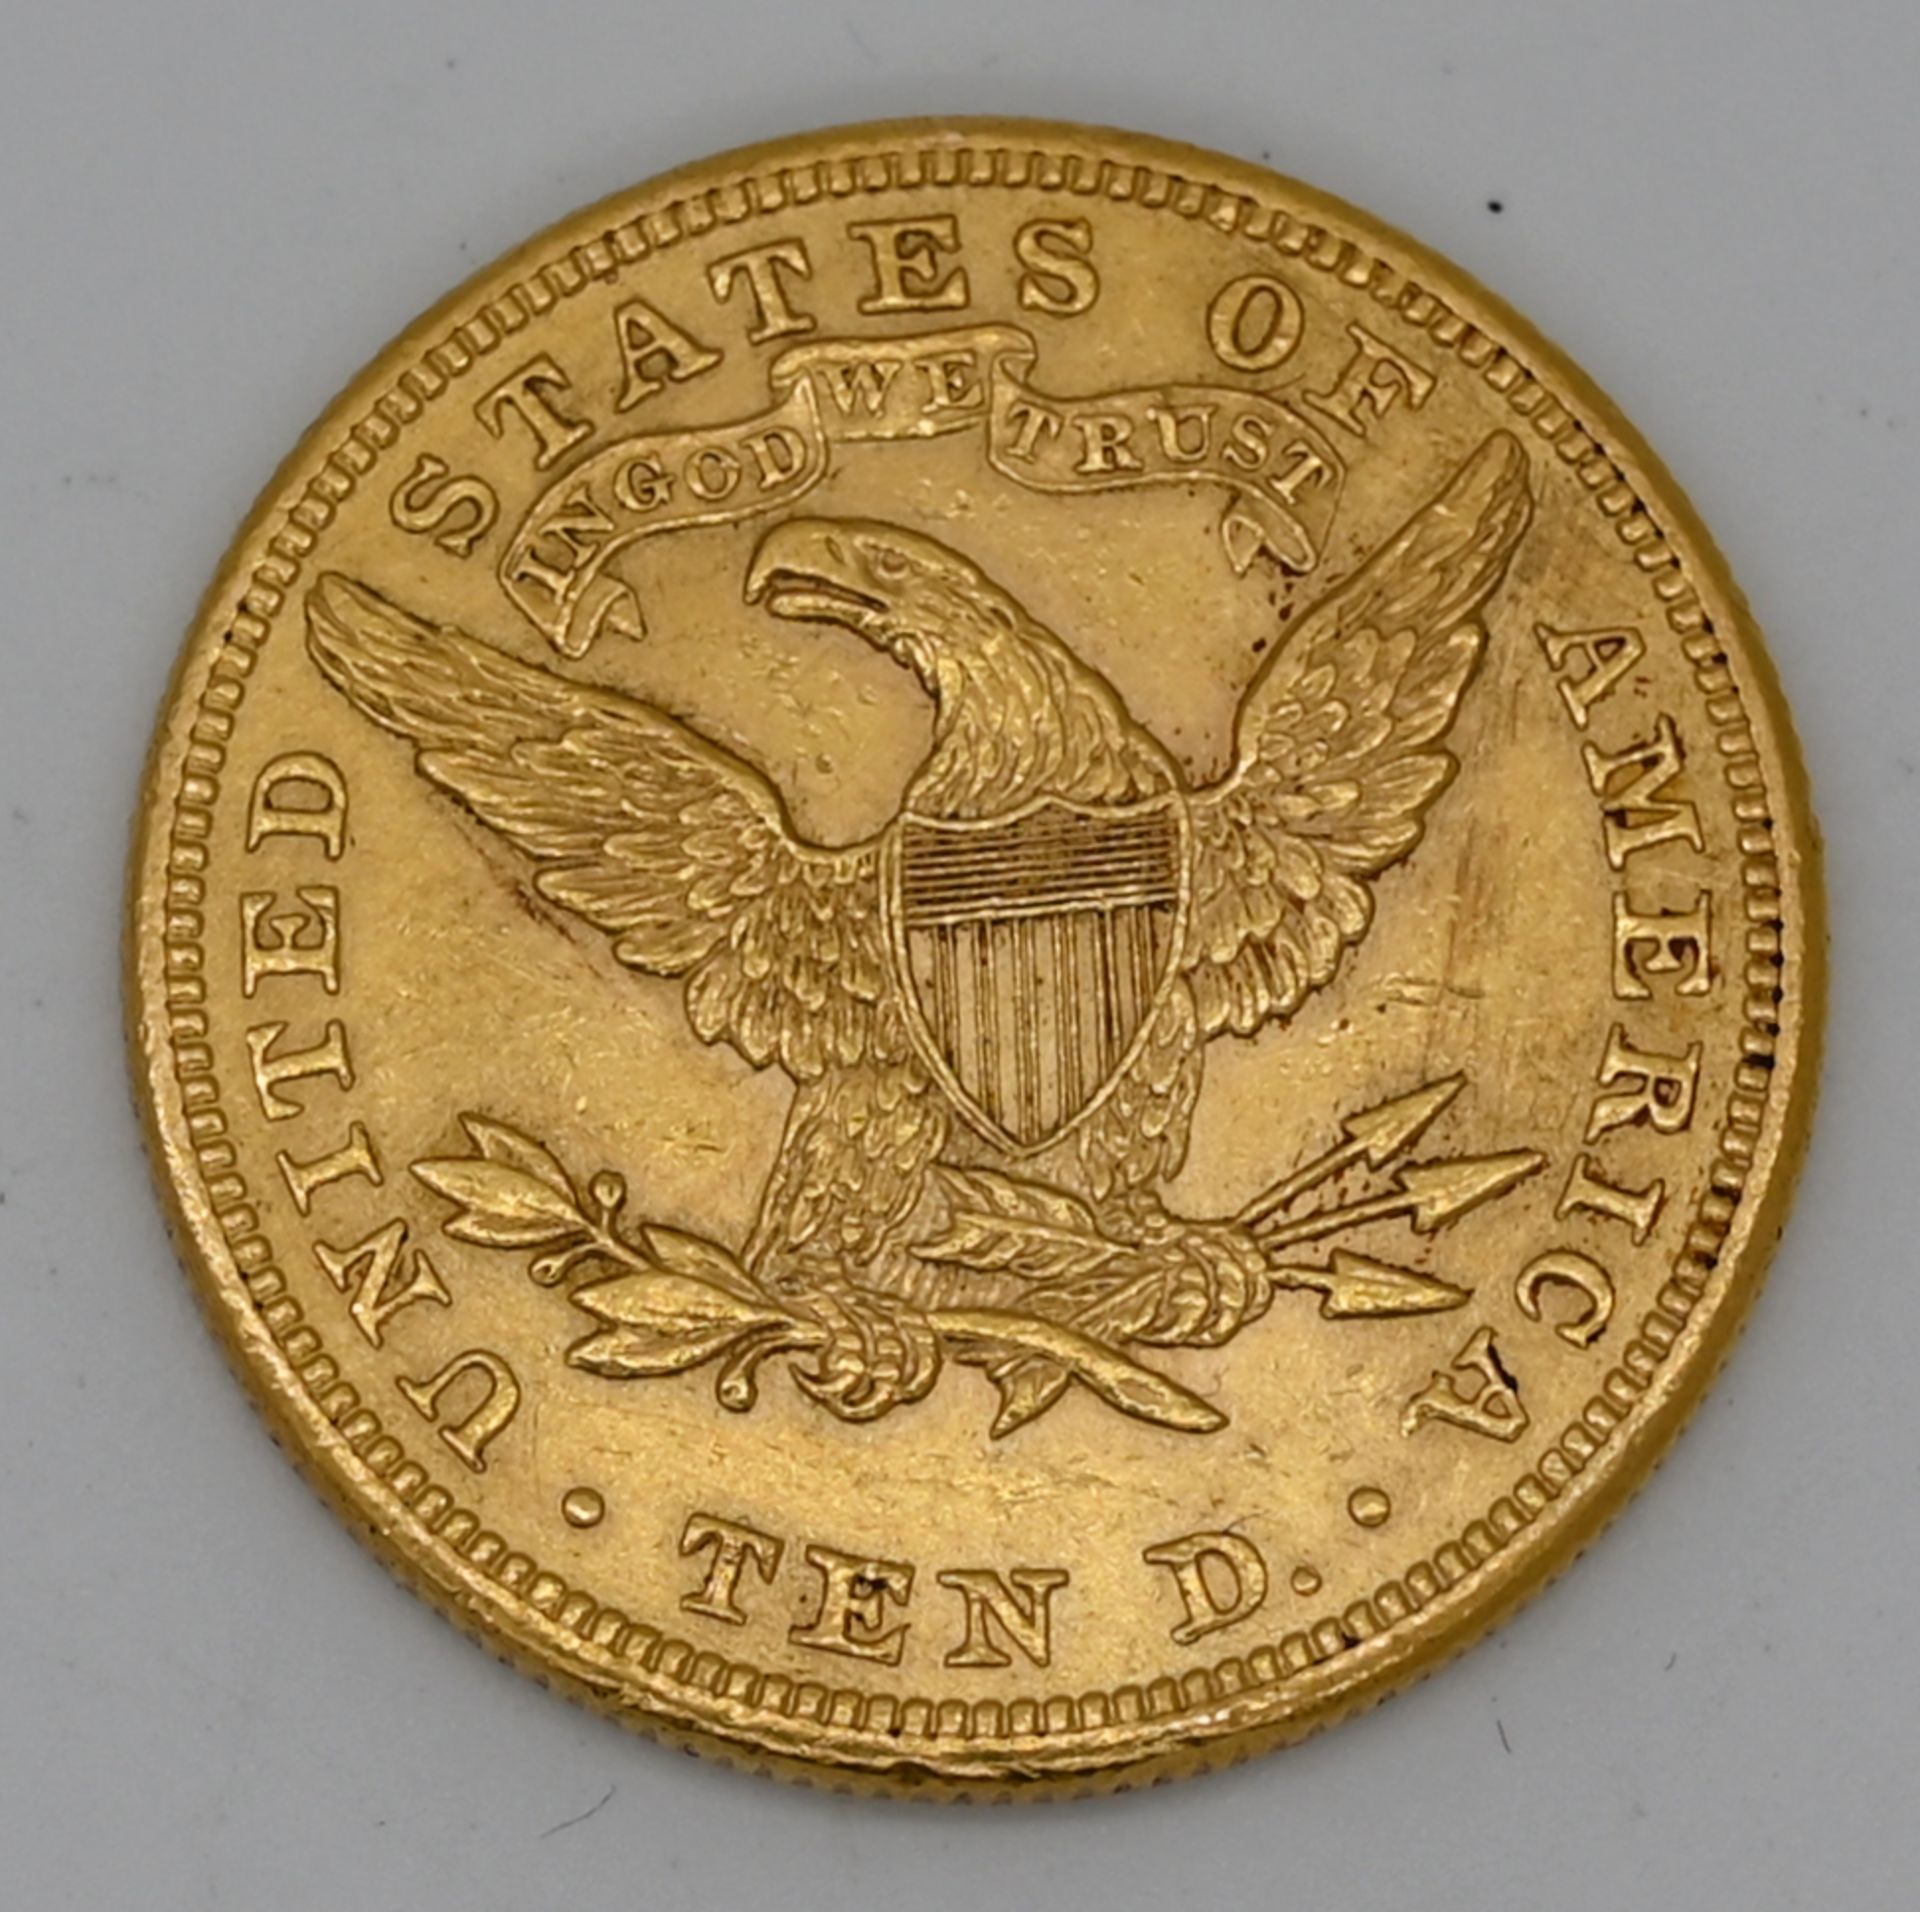 1 Münze GG, USA "10 Dollars" datiert 1901 (wohl aus der Zeit), Asp./Gsp. - Bild 2 aus 2